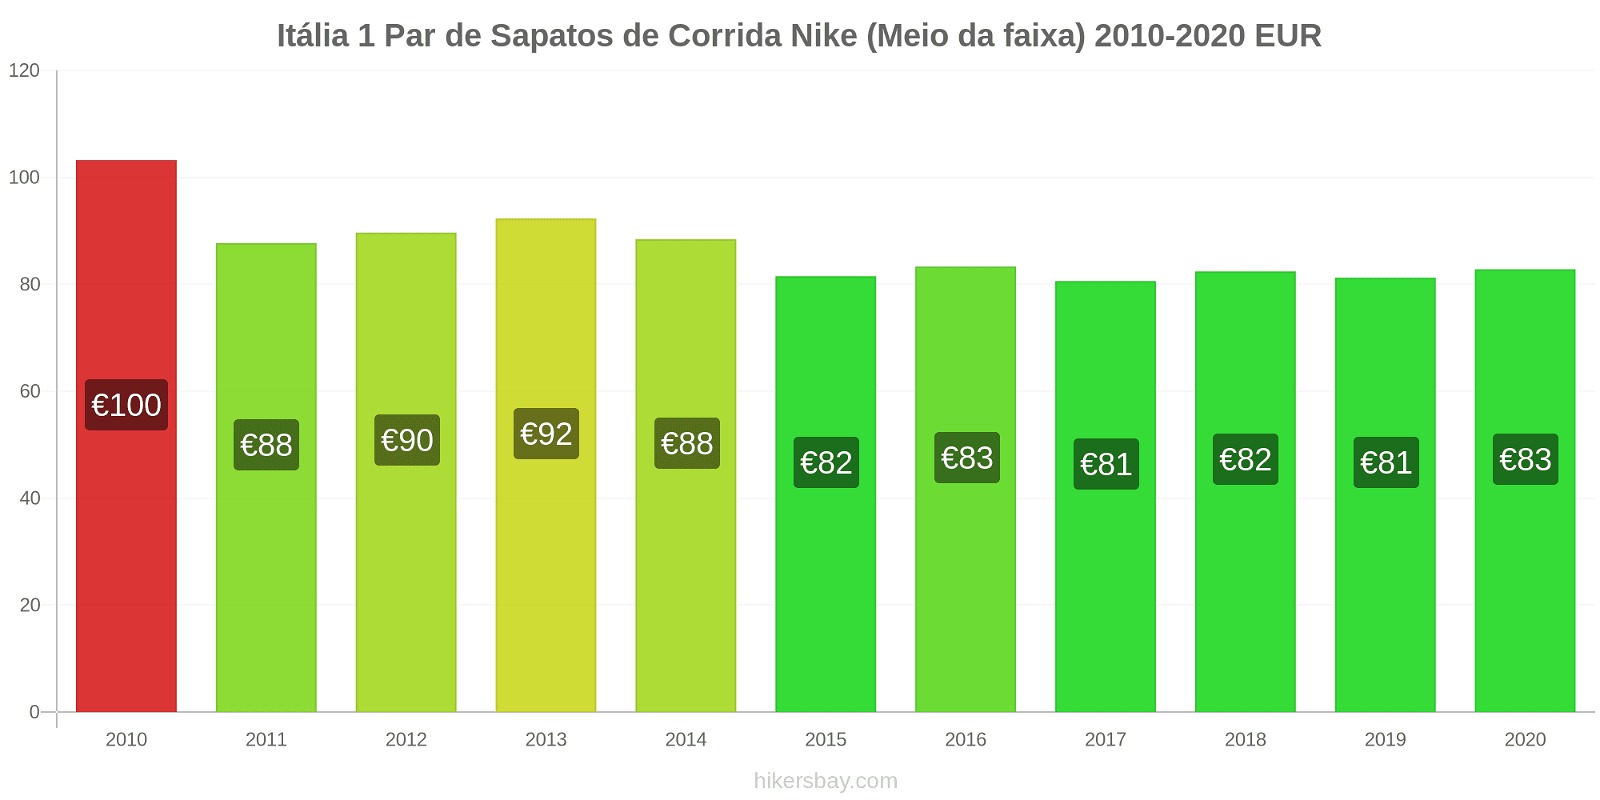 Itália variação de preço 1 par de tênis Nike (mid-range) hikersbay.com